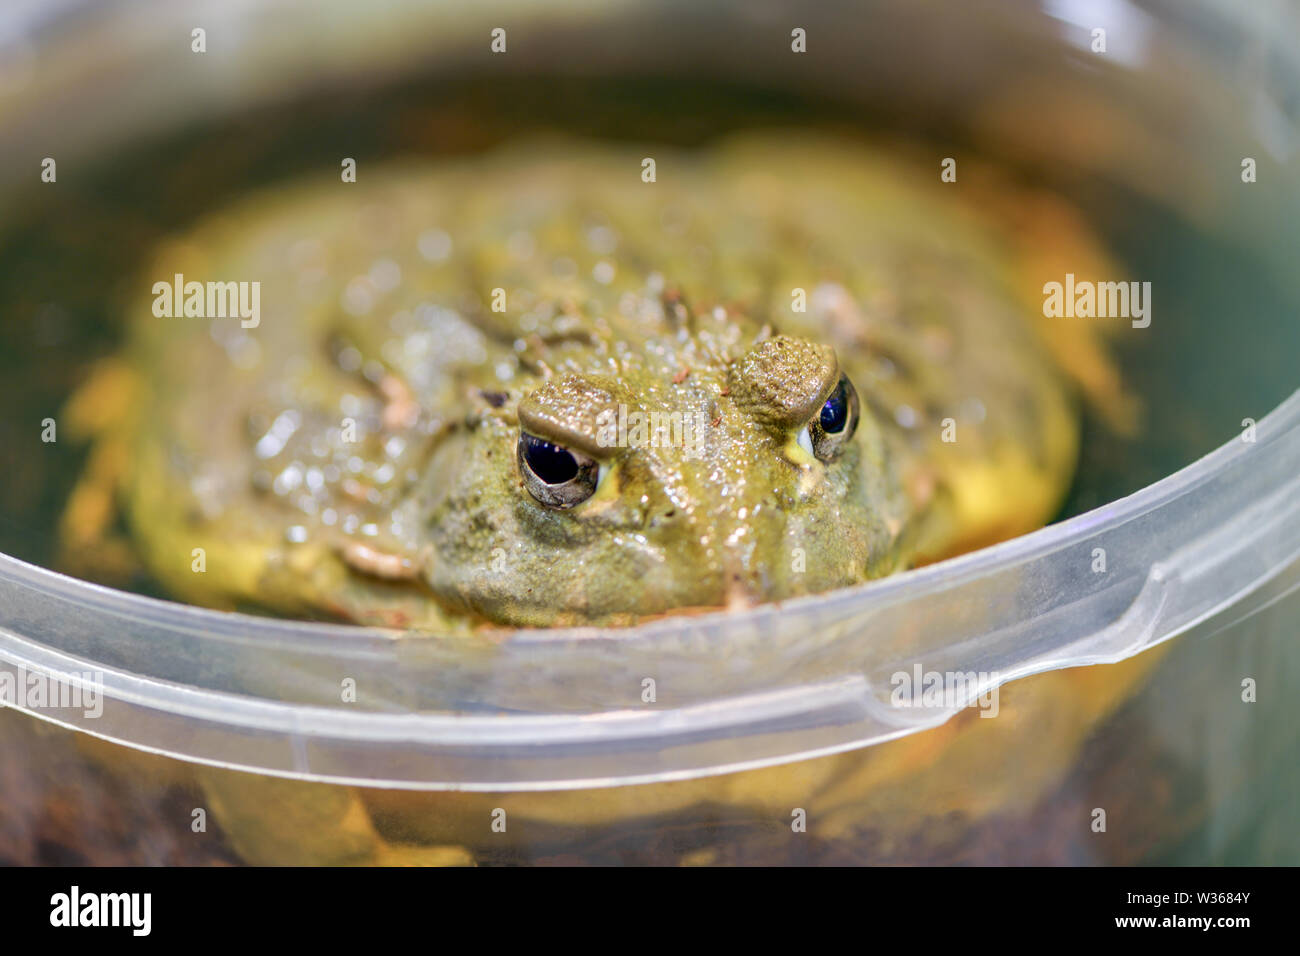 Pyxicephalus adspersus. Afrikanische Riese bullfrog. Die grünen Frosch ist ein Wasser-Pflanze, graben Frosch sitzen in einem plastikeimer Close-up in einem Terrarium. Stockfoto